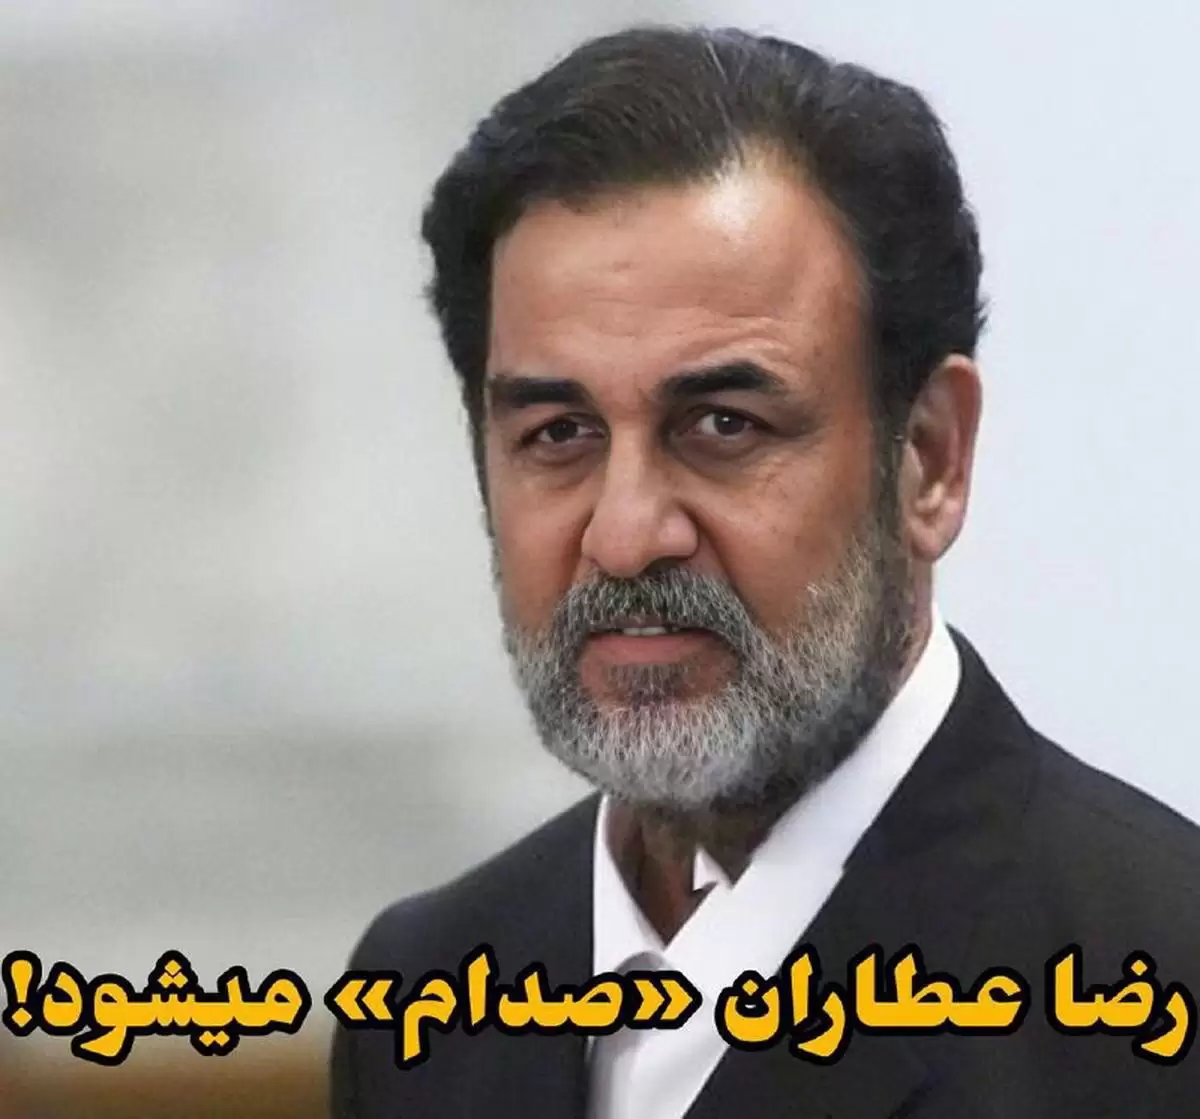 شباهت جالب رضا عطاران با صدام حسین قبل از اعدام+عکس